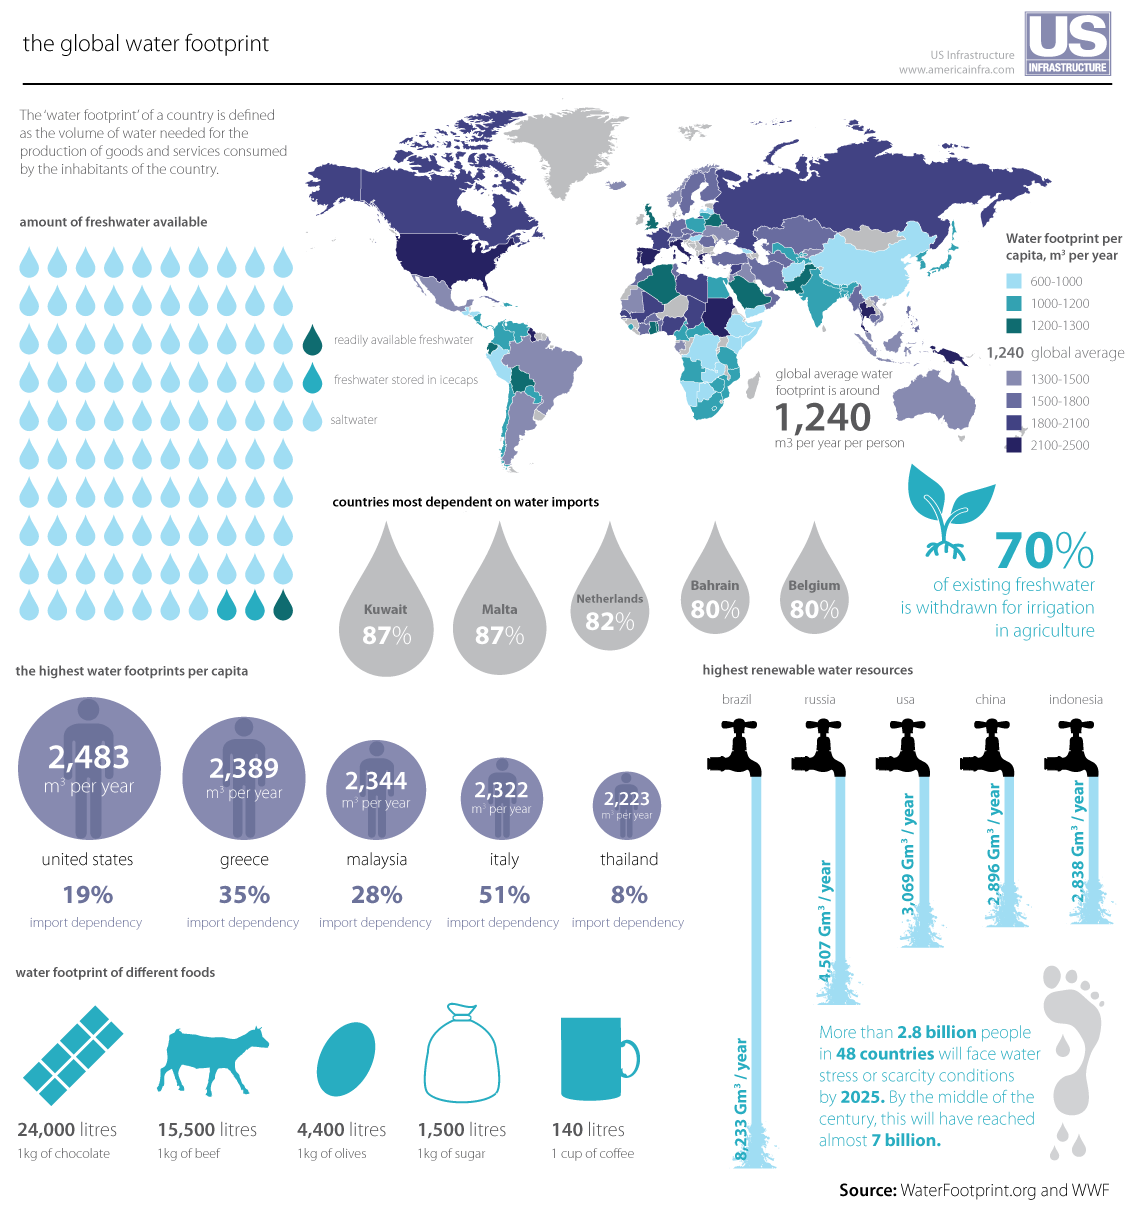 Global Water Footprint